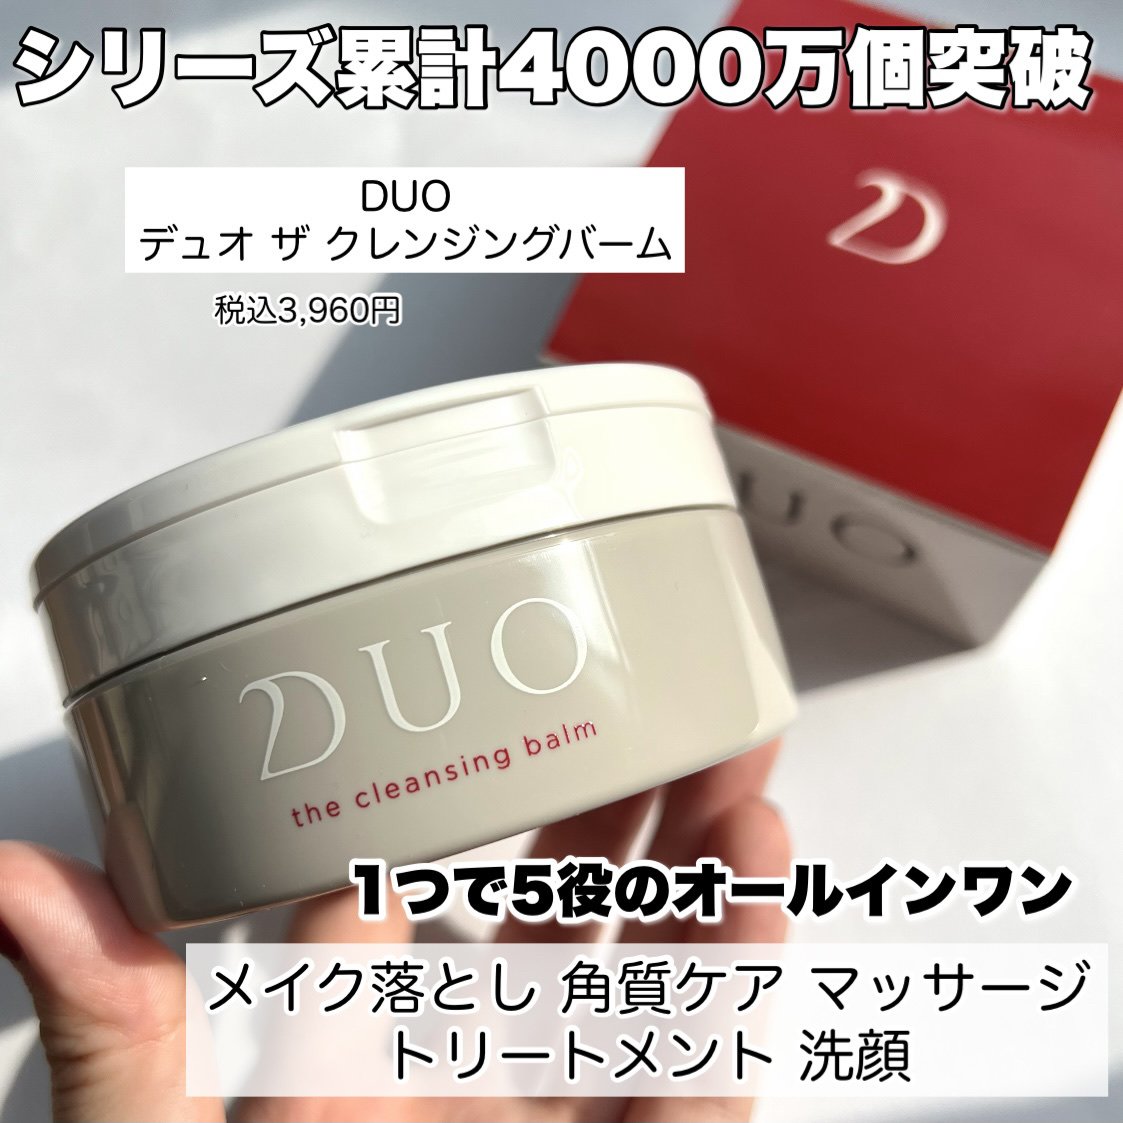 デュオ DUO ザクレンジングバーム 赤 20g×6個 - 基礎化粧品